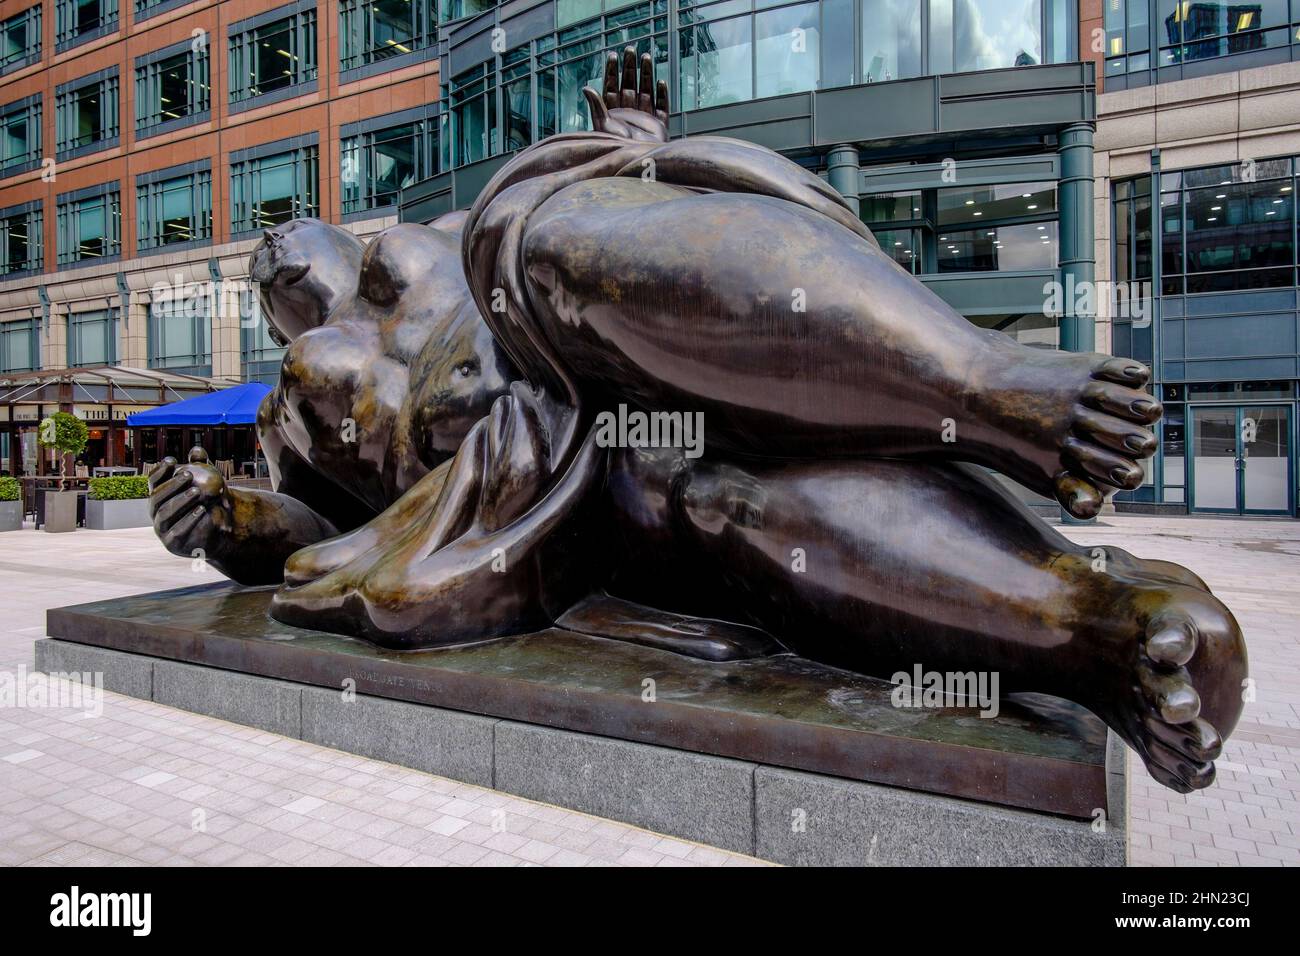 La sculpture de Broadgate venus de l'artiste colombien Fernando Botero, Exchange Square, Broadgate, City of London, YK Banque D'Images